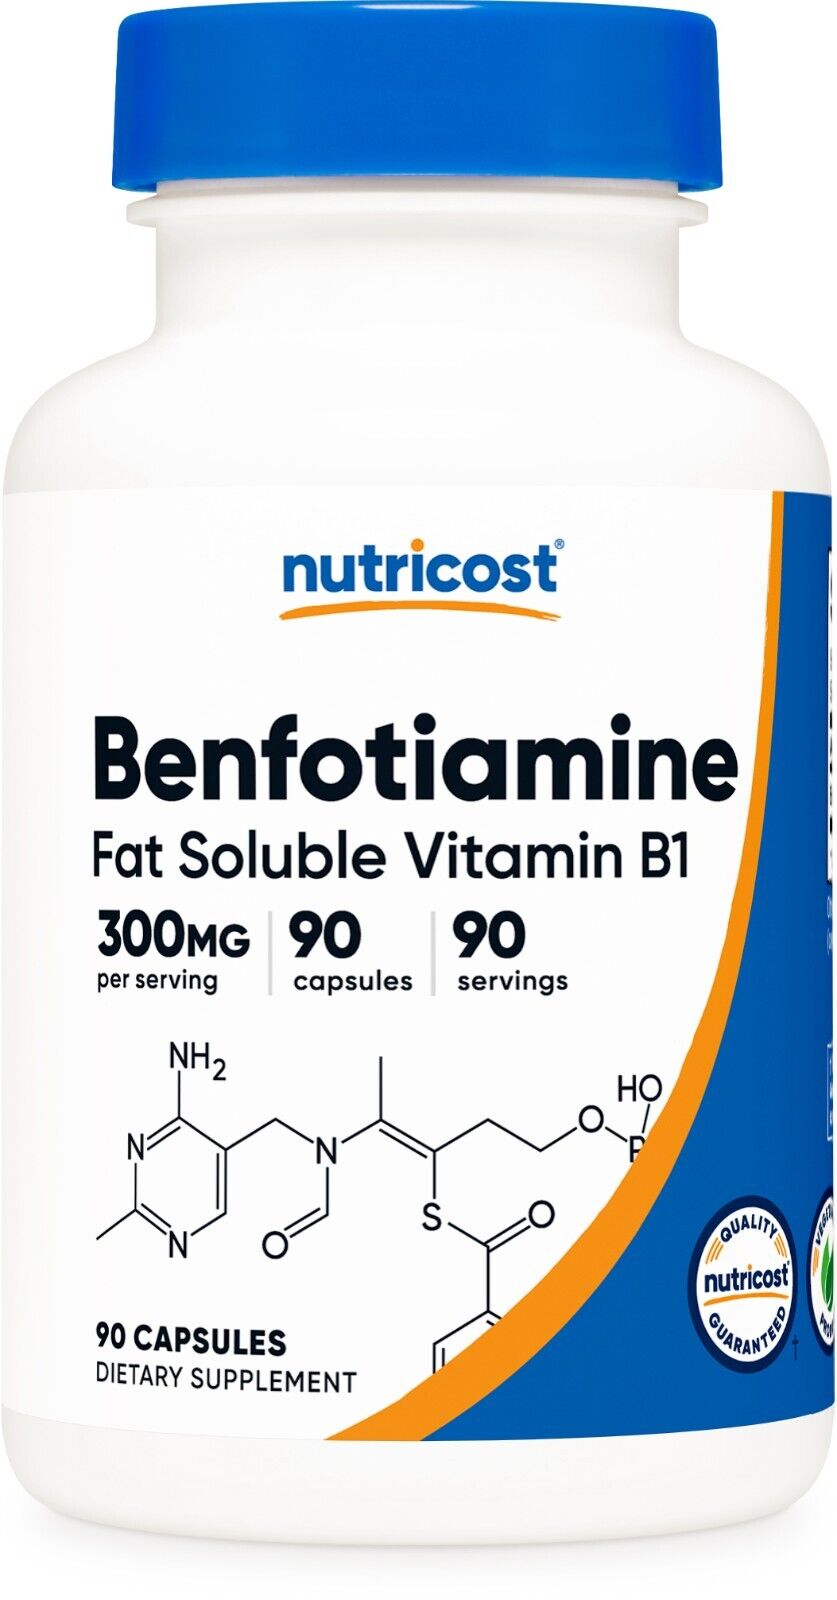 Nutricost Benfotiamine 300mg, 90 Capsules - Gluten Free and Non-GMO